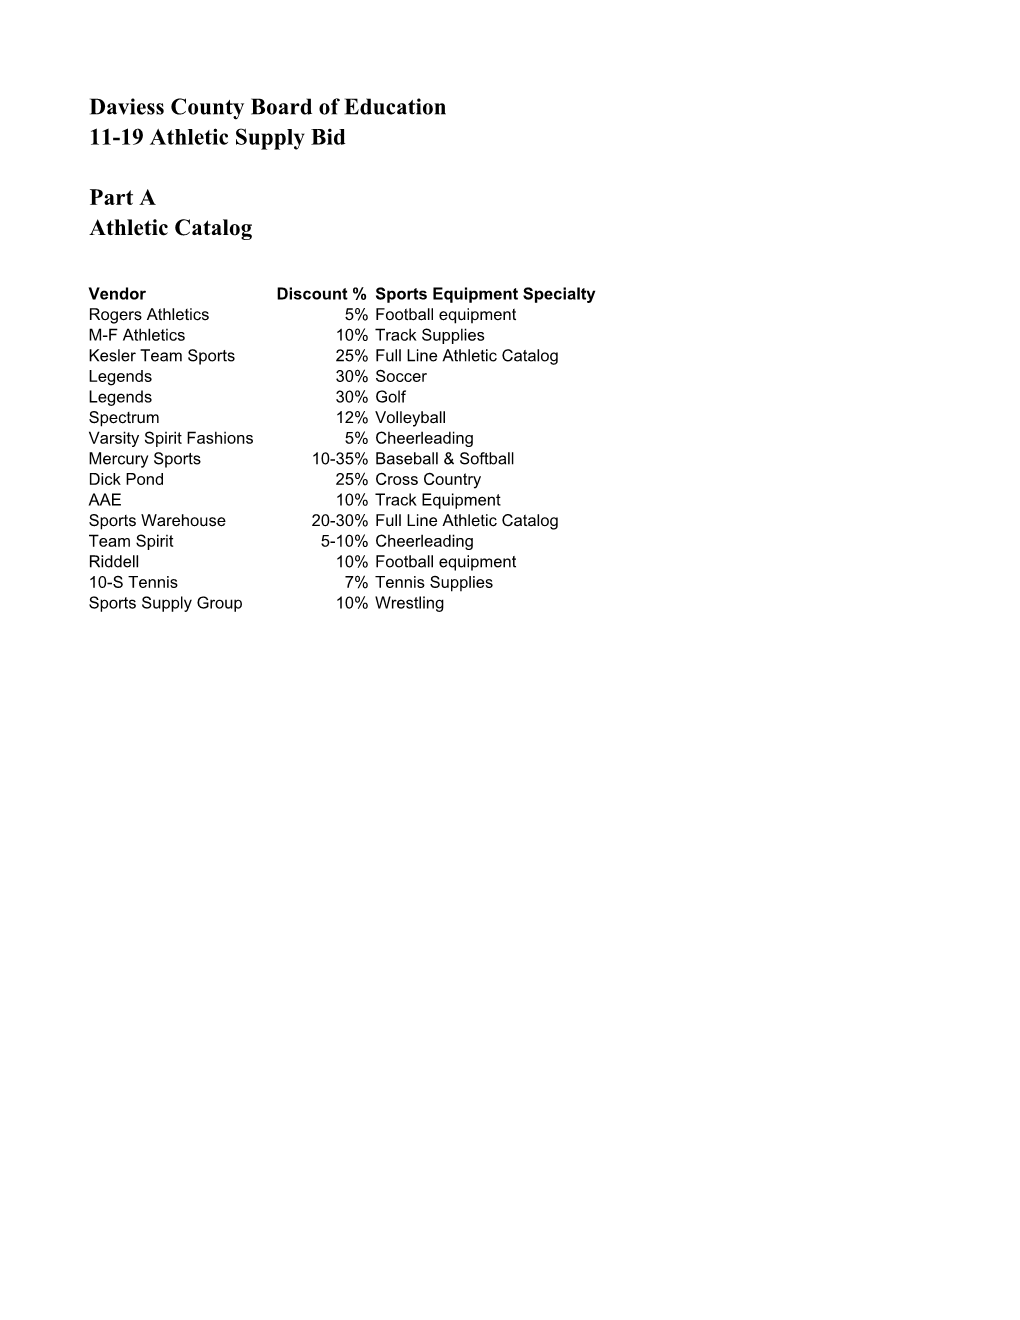 Coaches List 2011-12